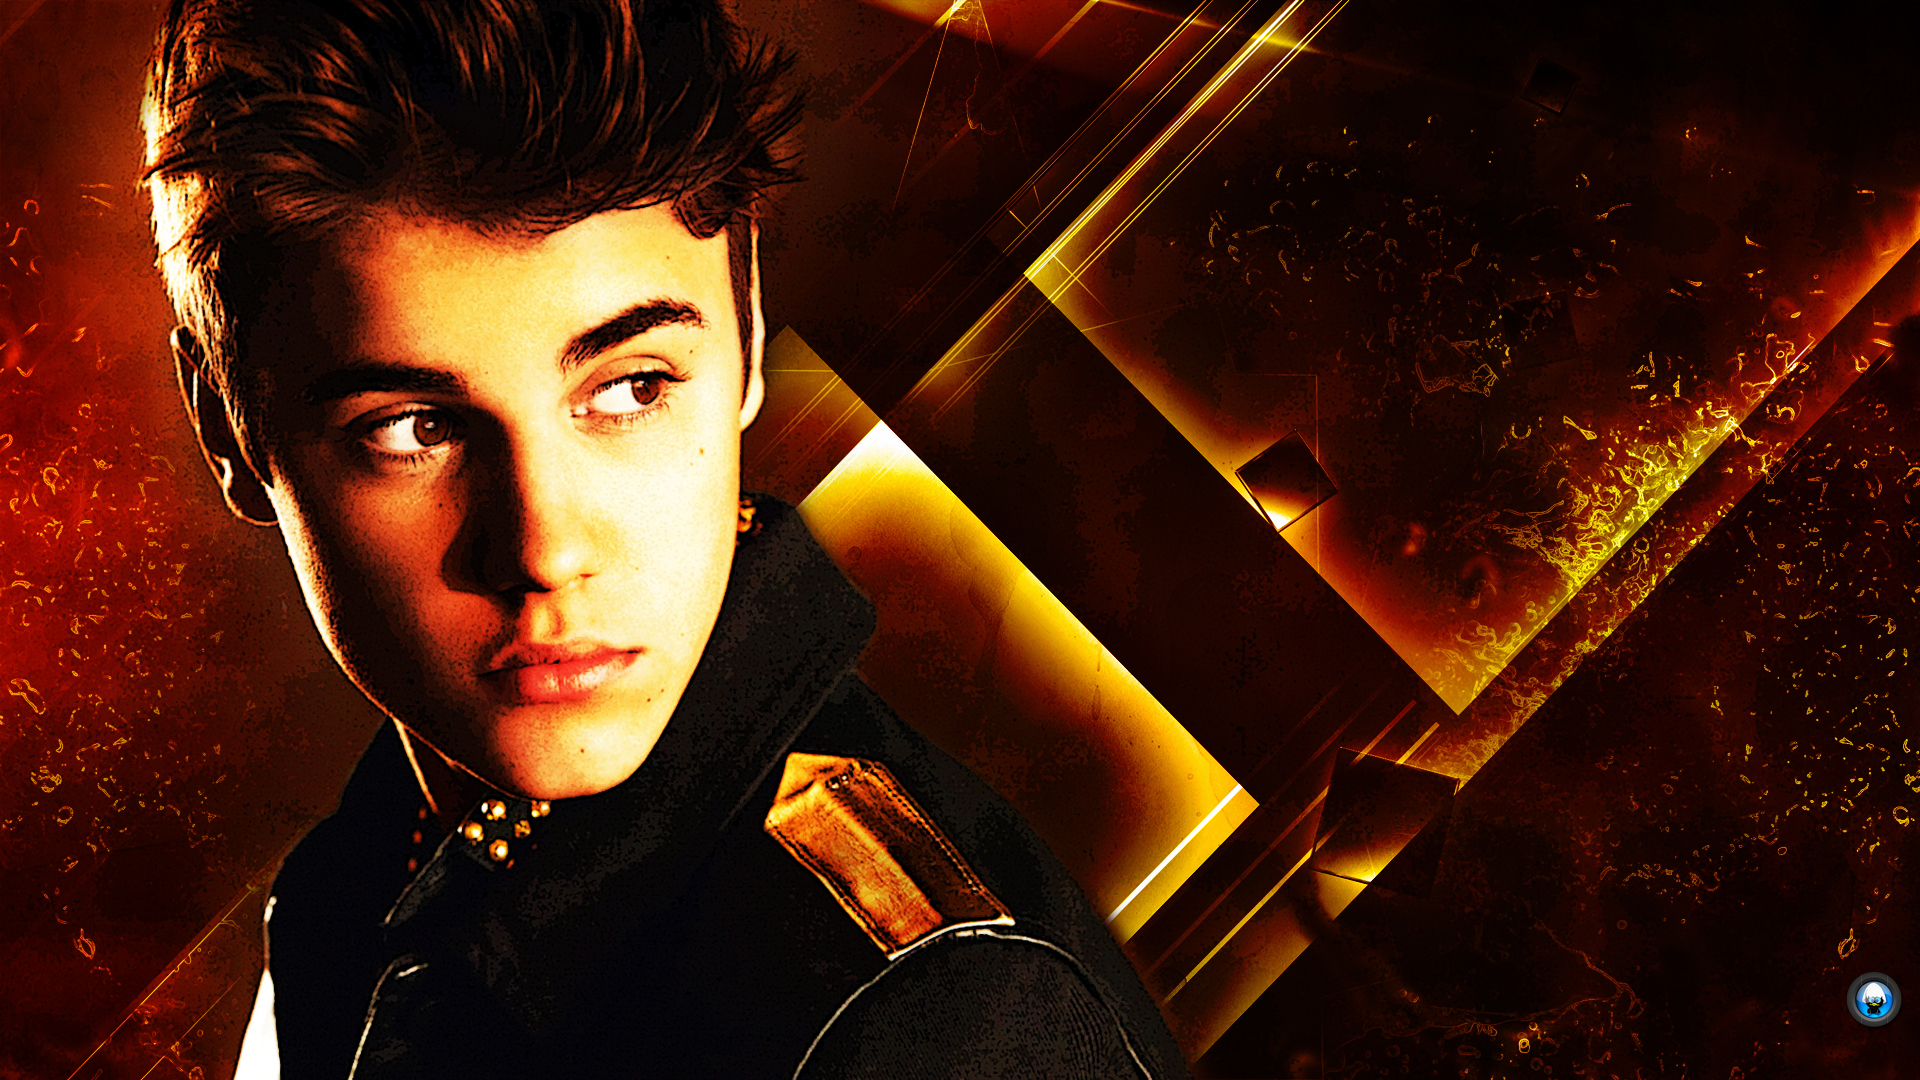 Justin Bieber 2013 Wallpaper , HD Wallpaper & Backgrounds